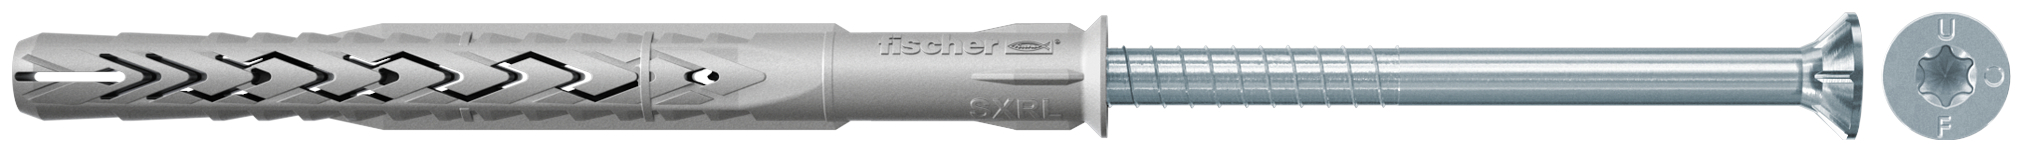 fischer Tasselli prolungati SXRL 14X100 T (1 Pz.) Tassello prolungato in nylon con marcatura CE con vite premontata T.S.P. impronta torx.